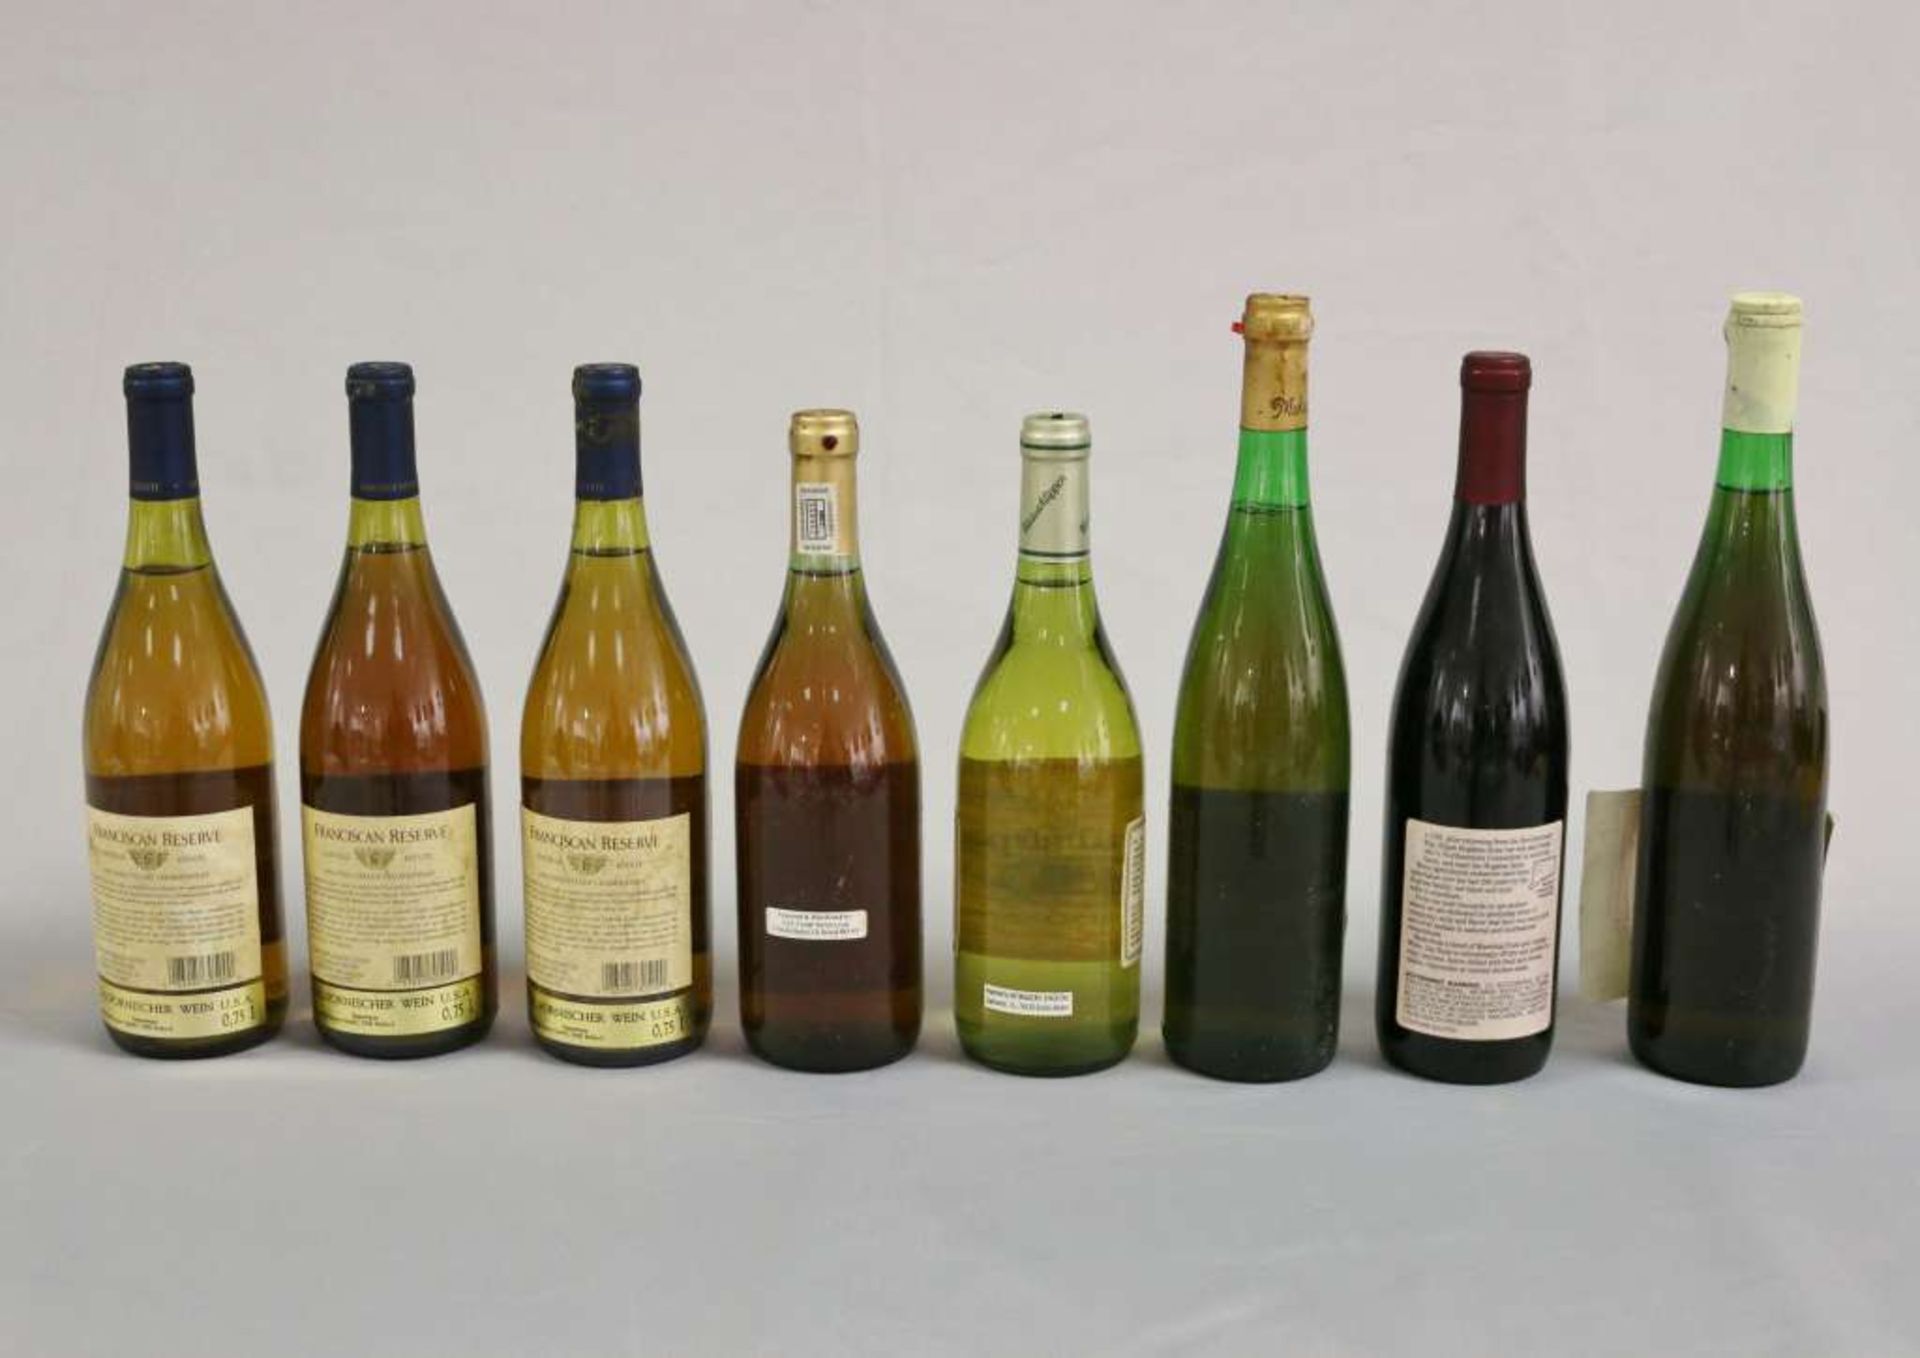 Weißwein u. Rotwein, 8 Flaschen: Californien 3 x Nappa Valley Chardonnay Franciscan reserve 1986; - Image 2 of 2